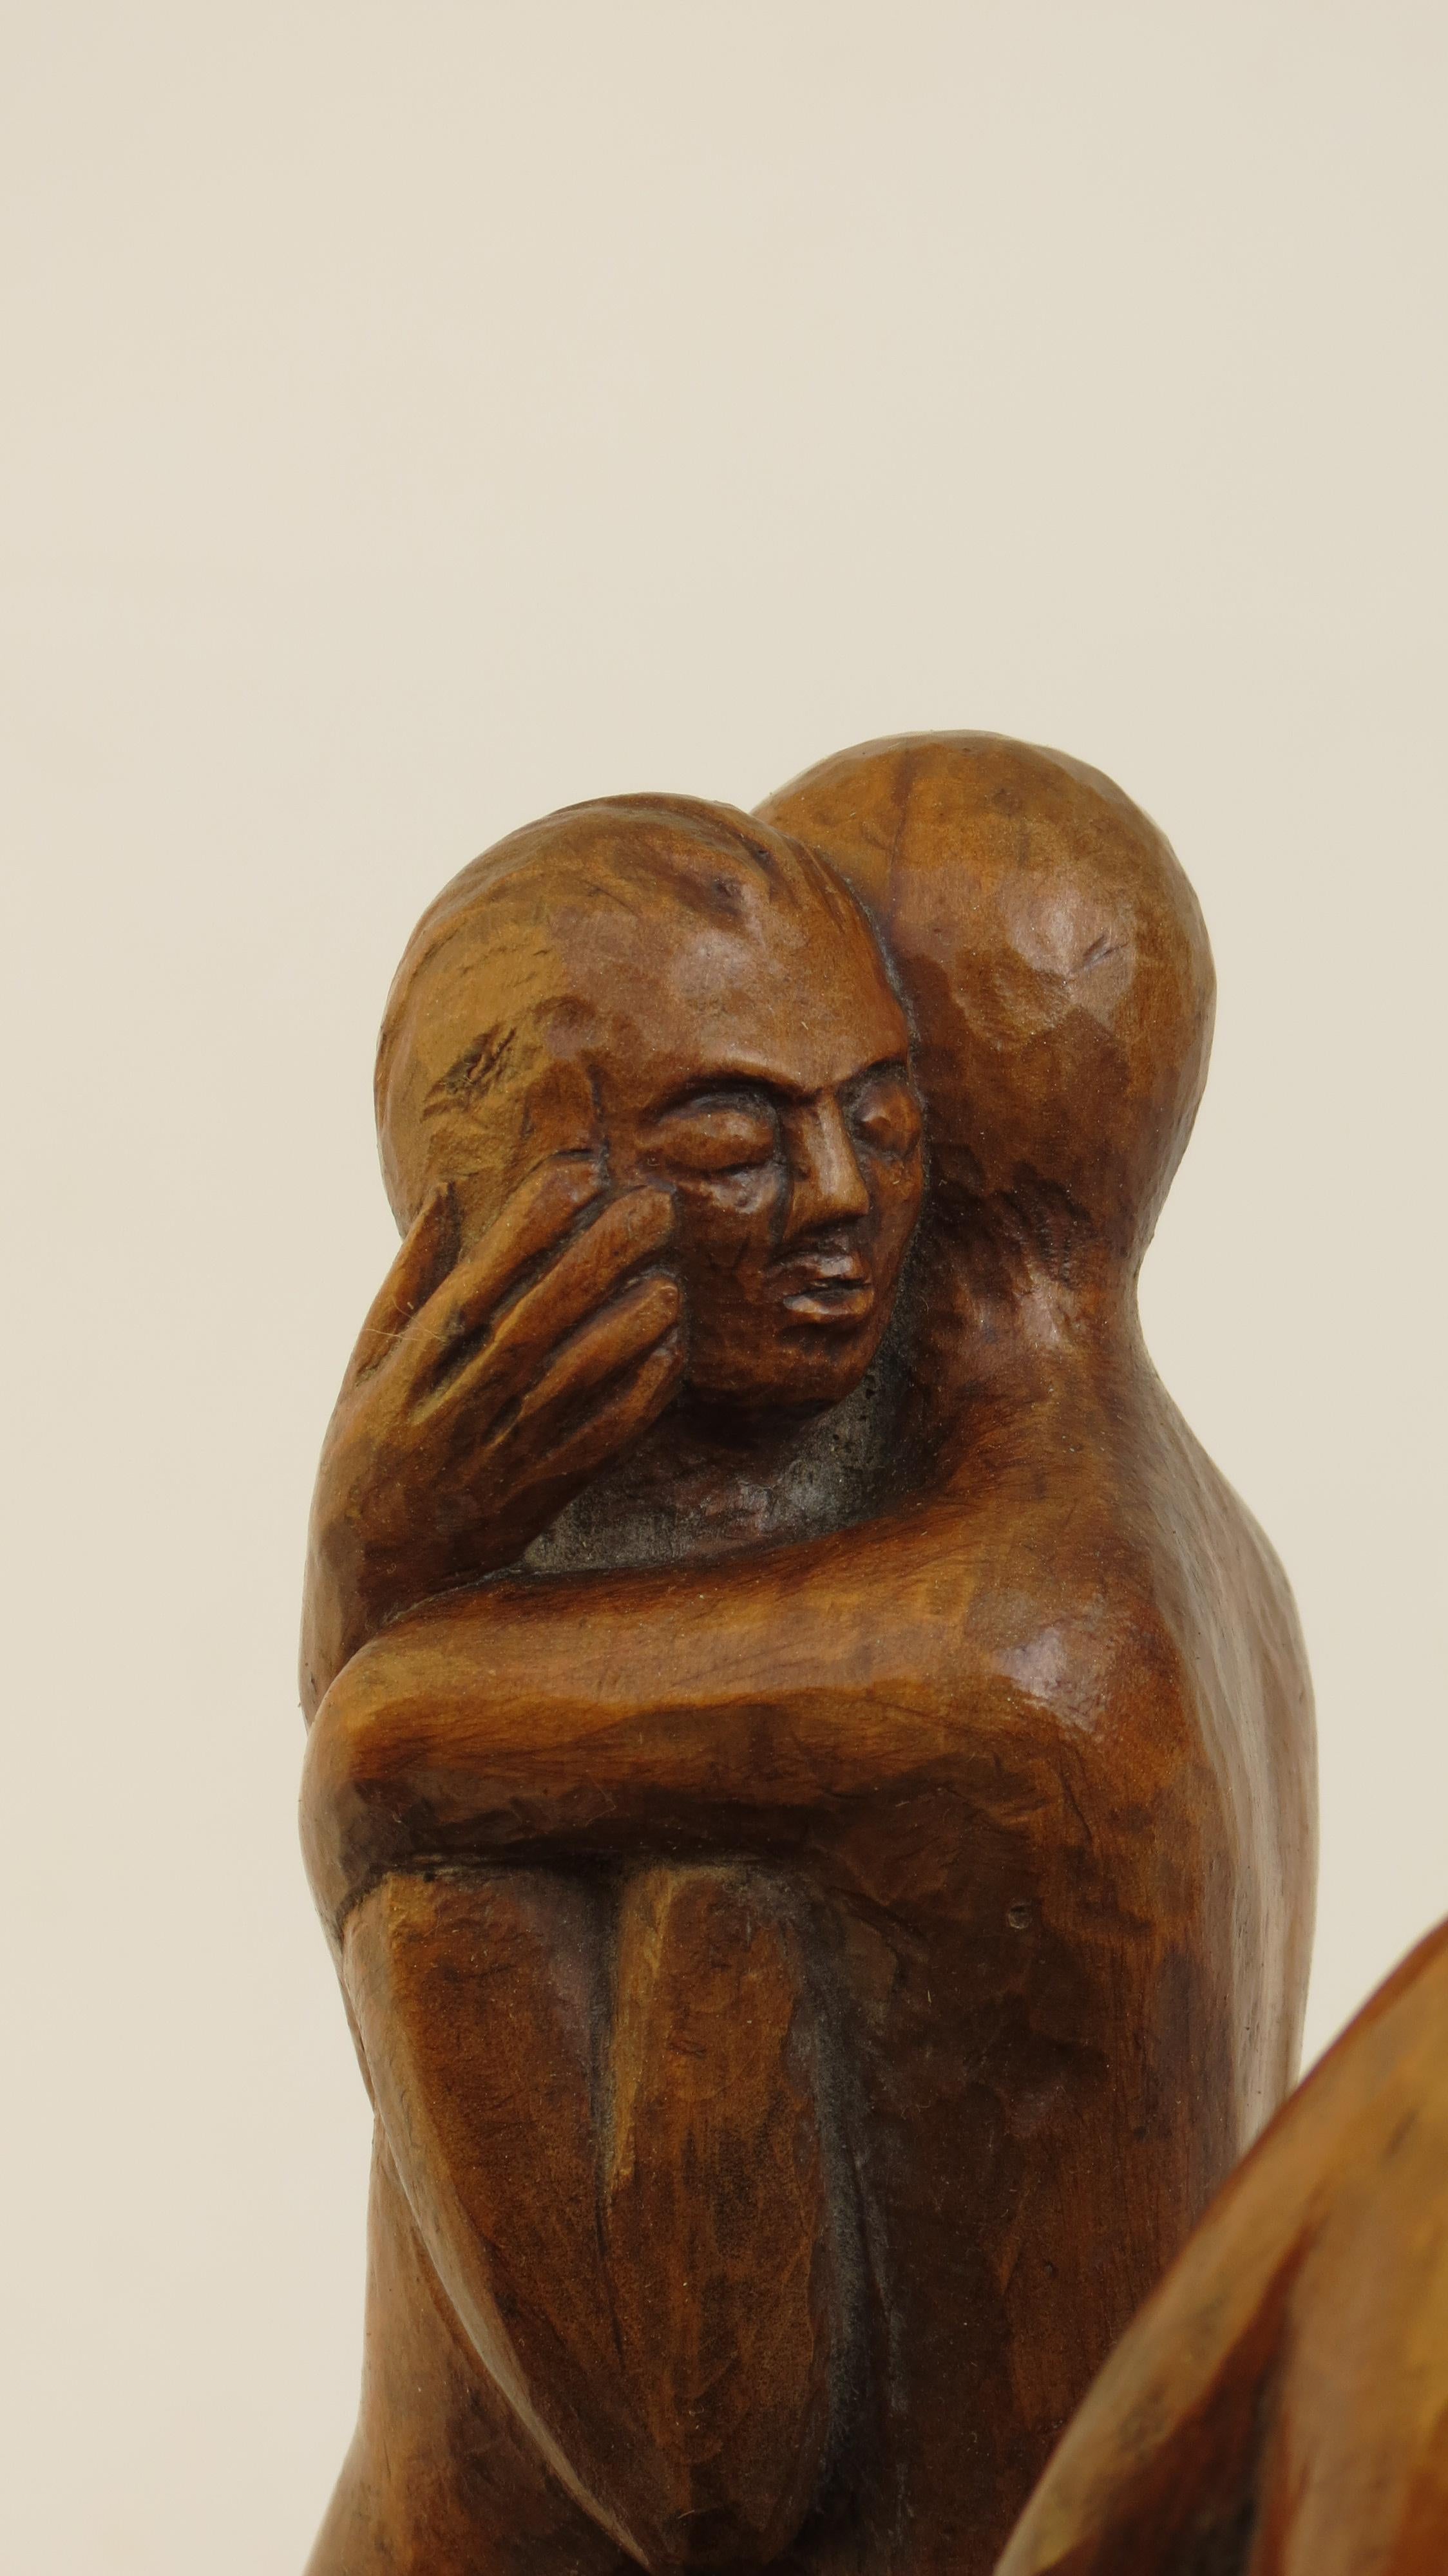 Hand-Carved 1971 Sculpture in Lime Wood by Thomas de la Berthauche Vintage Figure Sculpture